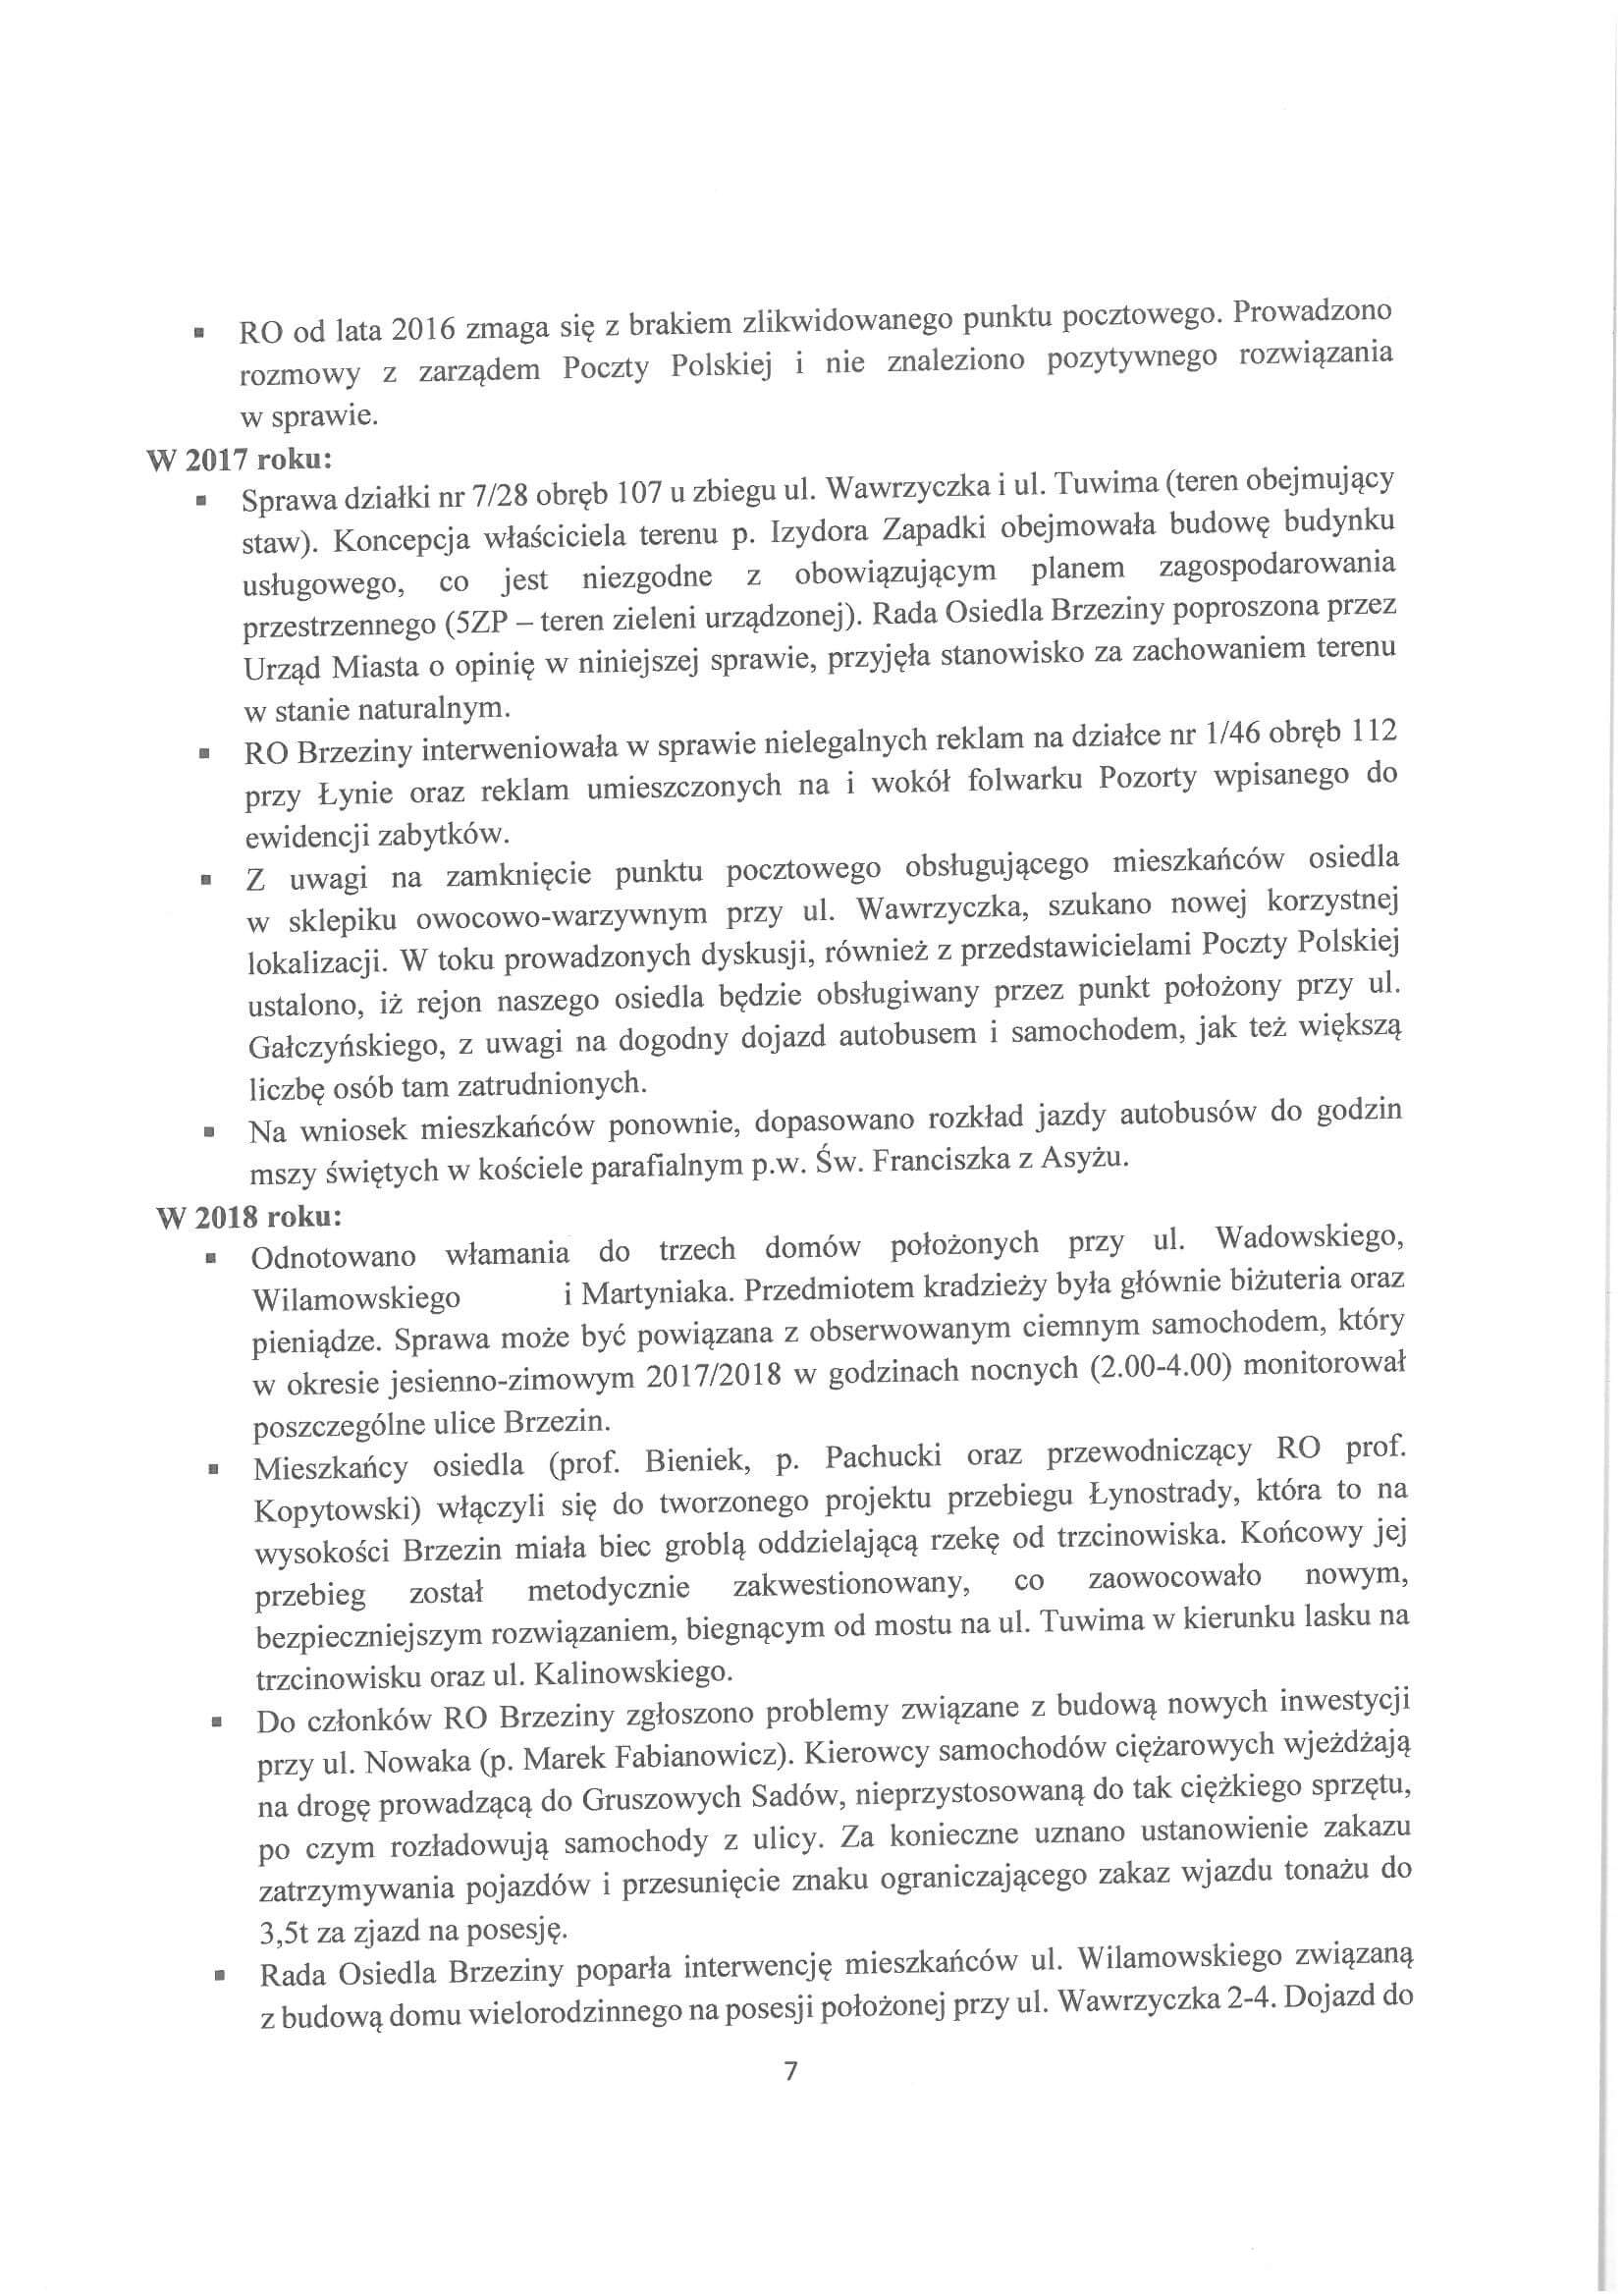 Sprawozdanie z działalności RO w latach 2015-2019-07